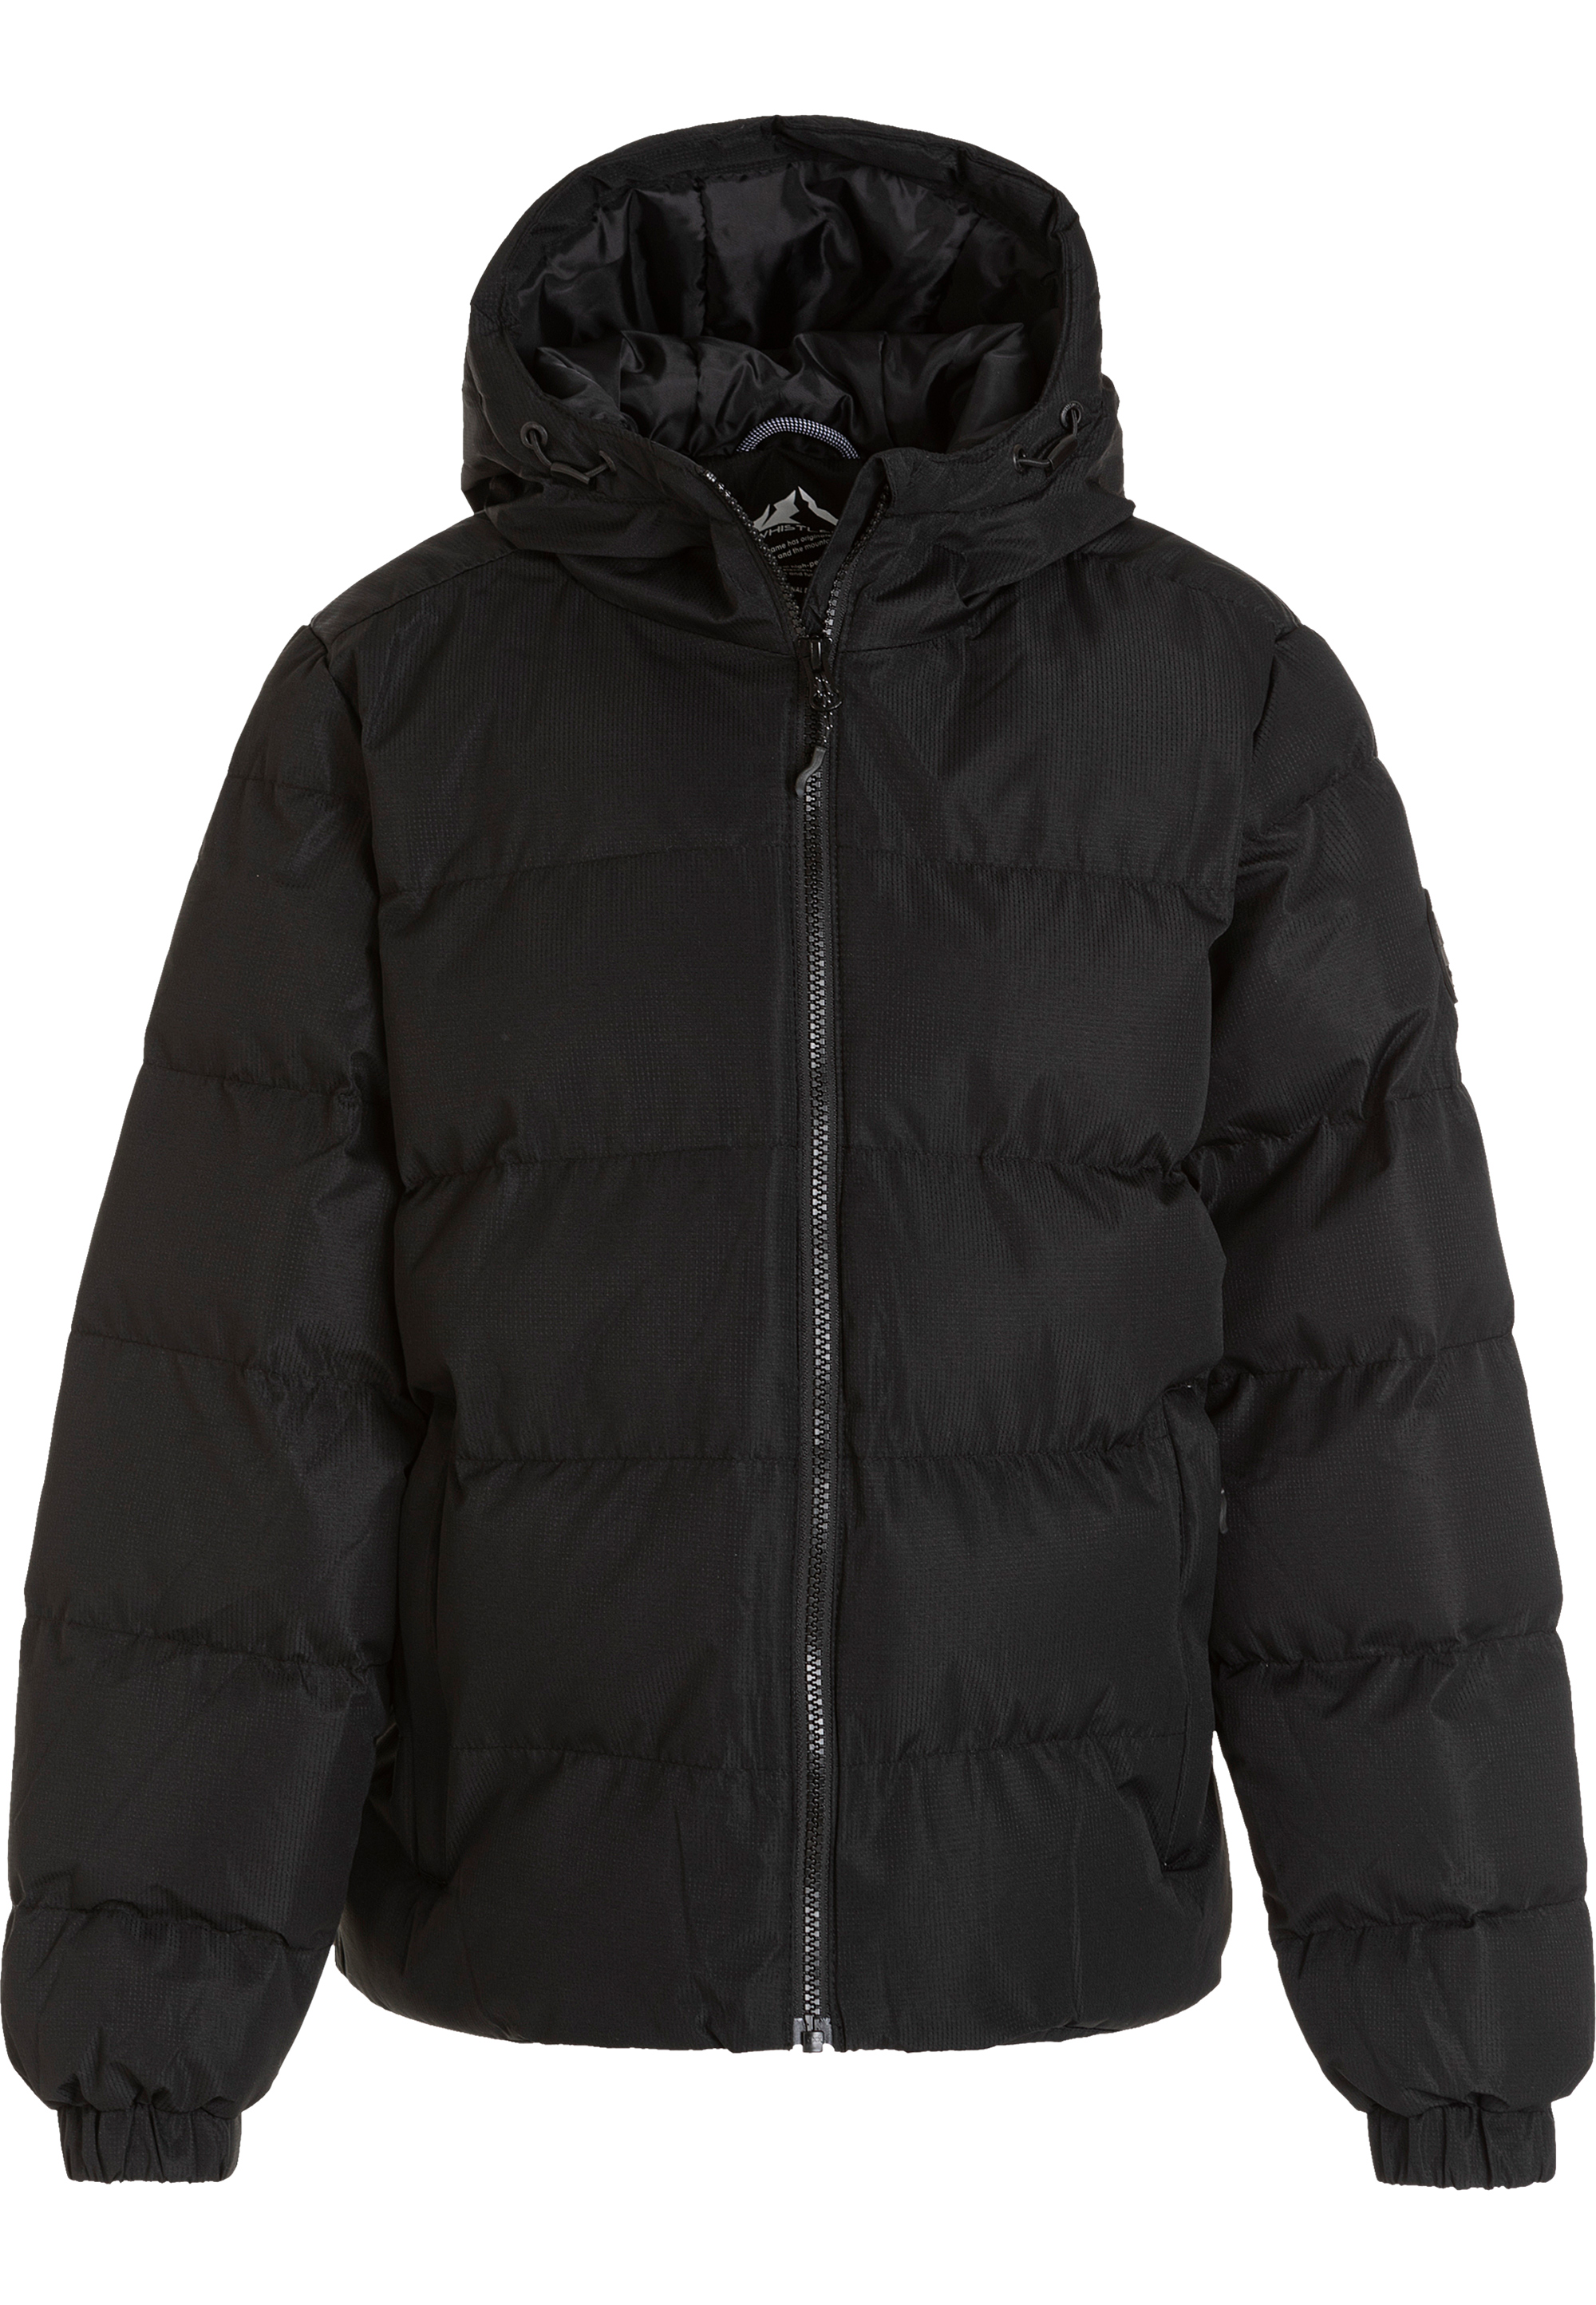 Функциональная куртка Whistler Steppjacke Floss Jr., цвет 1001 Black